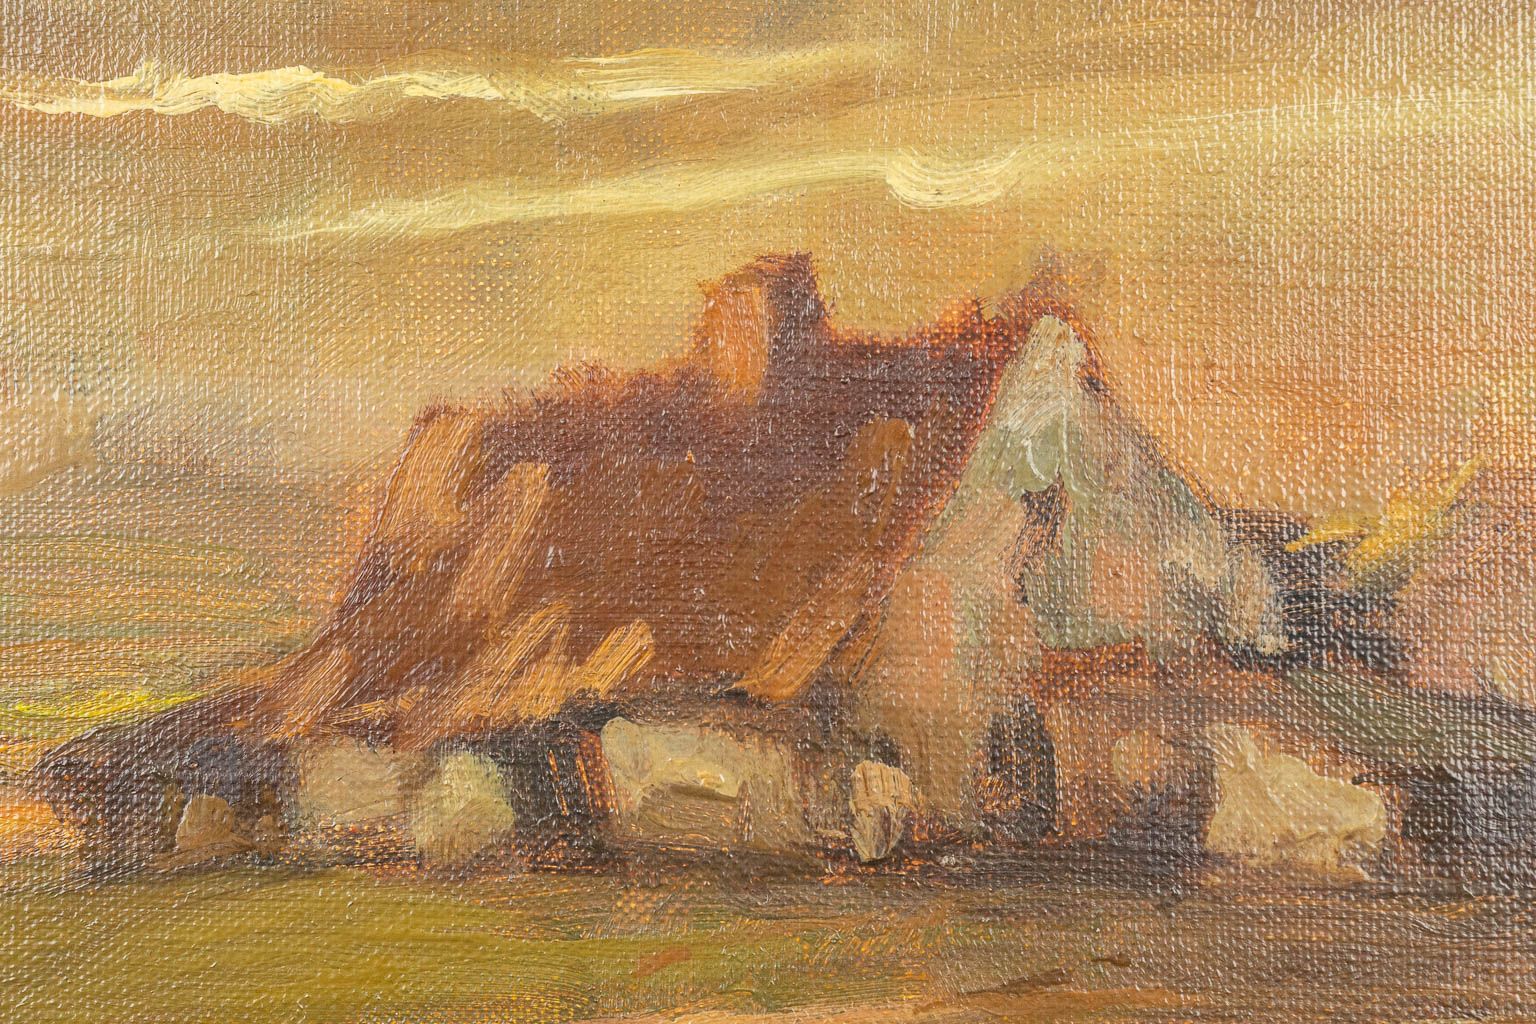 Marthe DE SPIEGELEIR (1897-1991) A collection of 2 landscapes, oil on canvas. (28 x 20 cm)